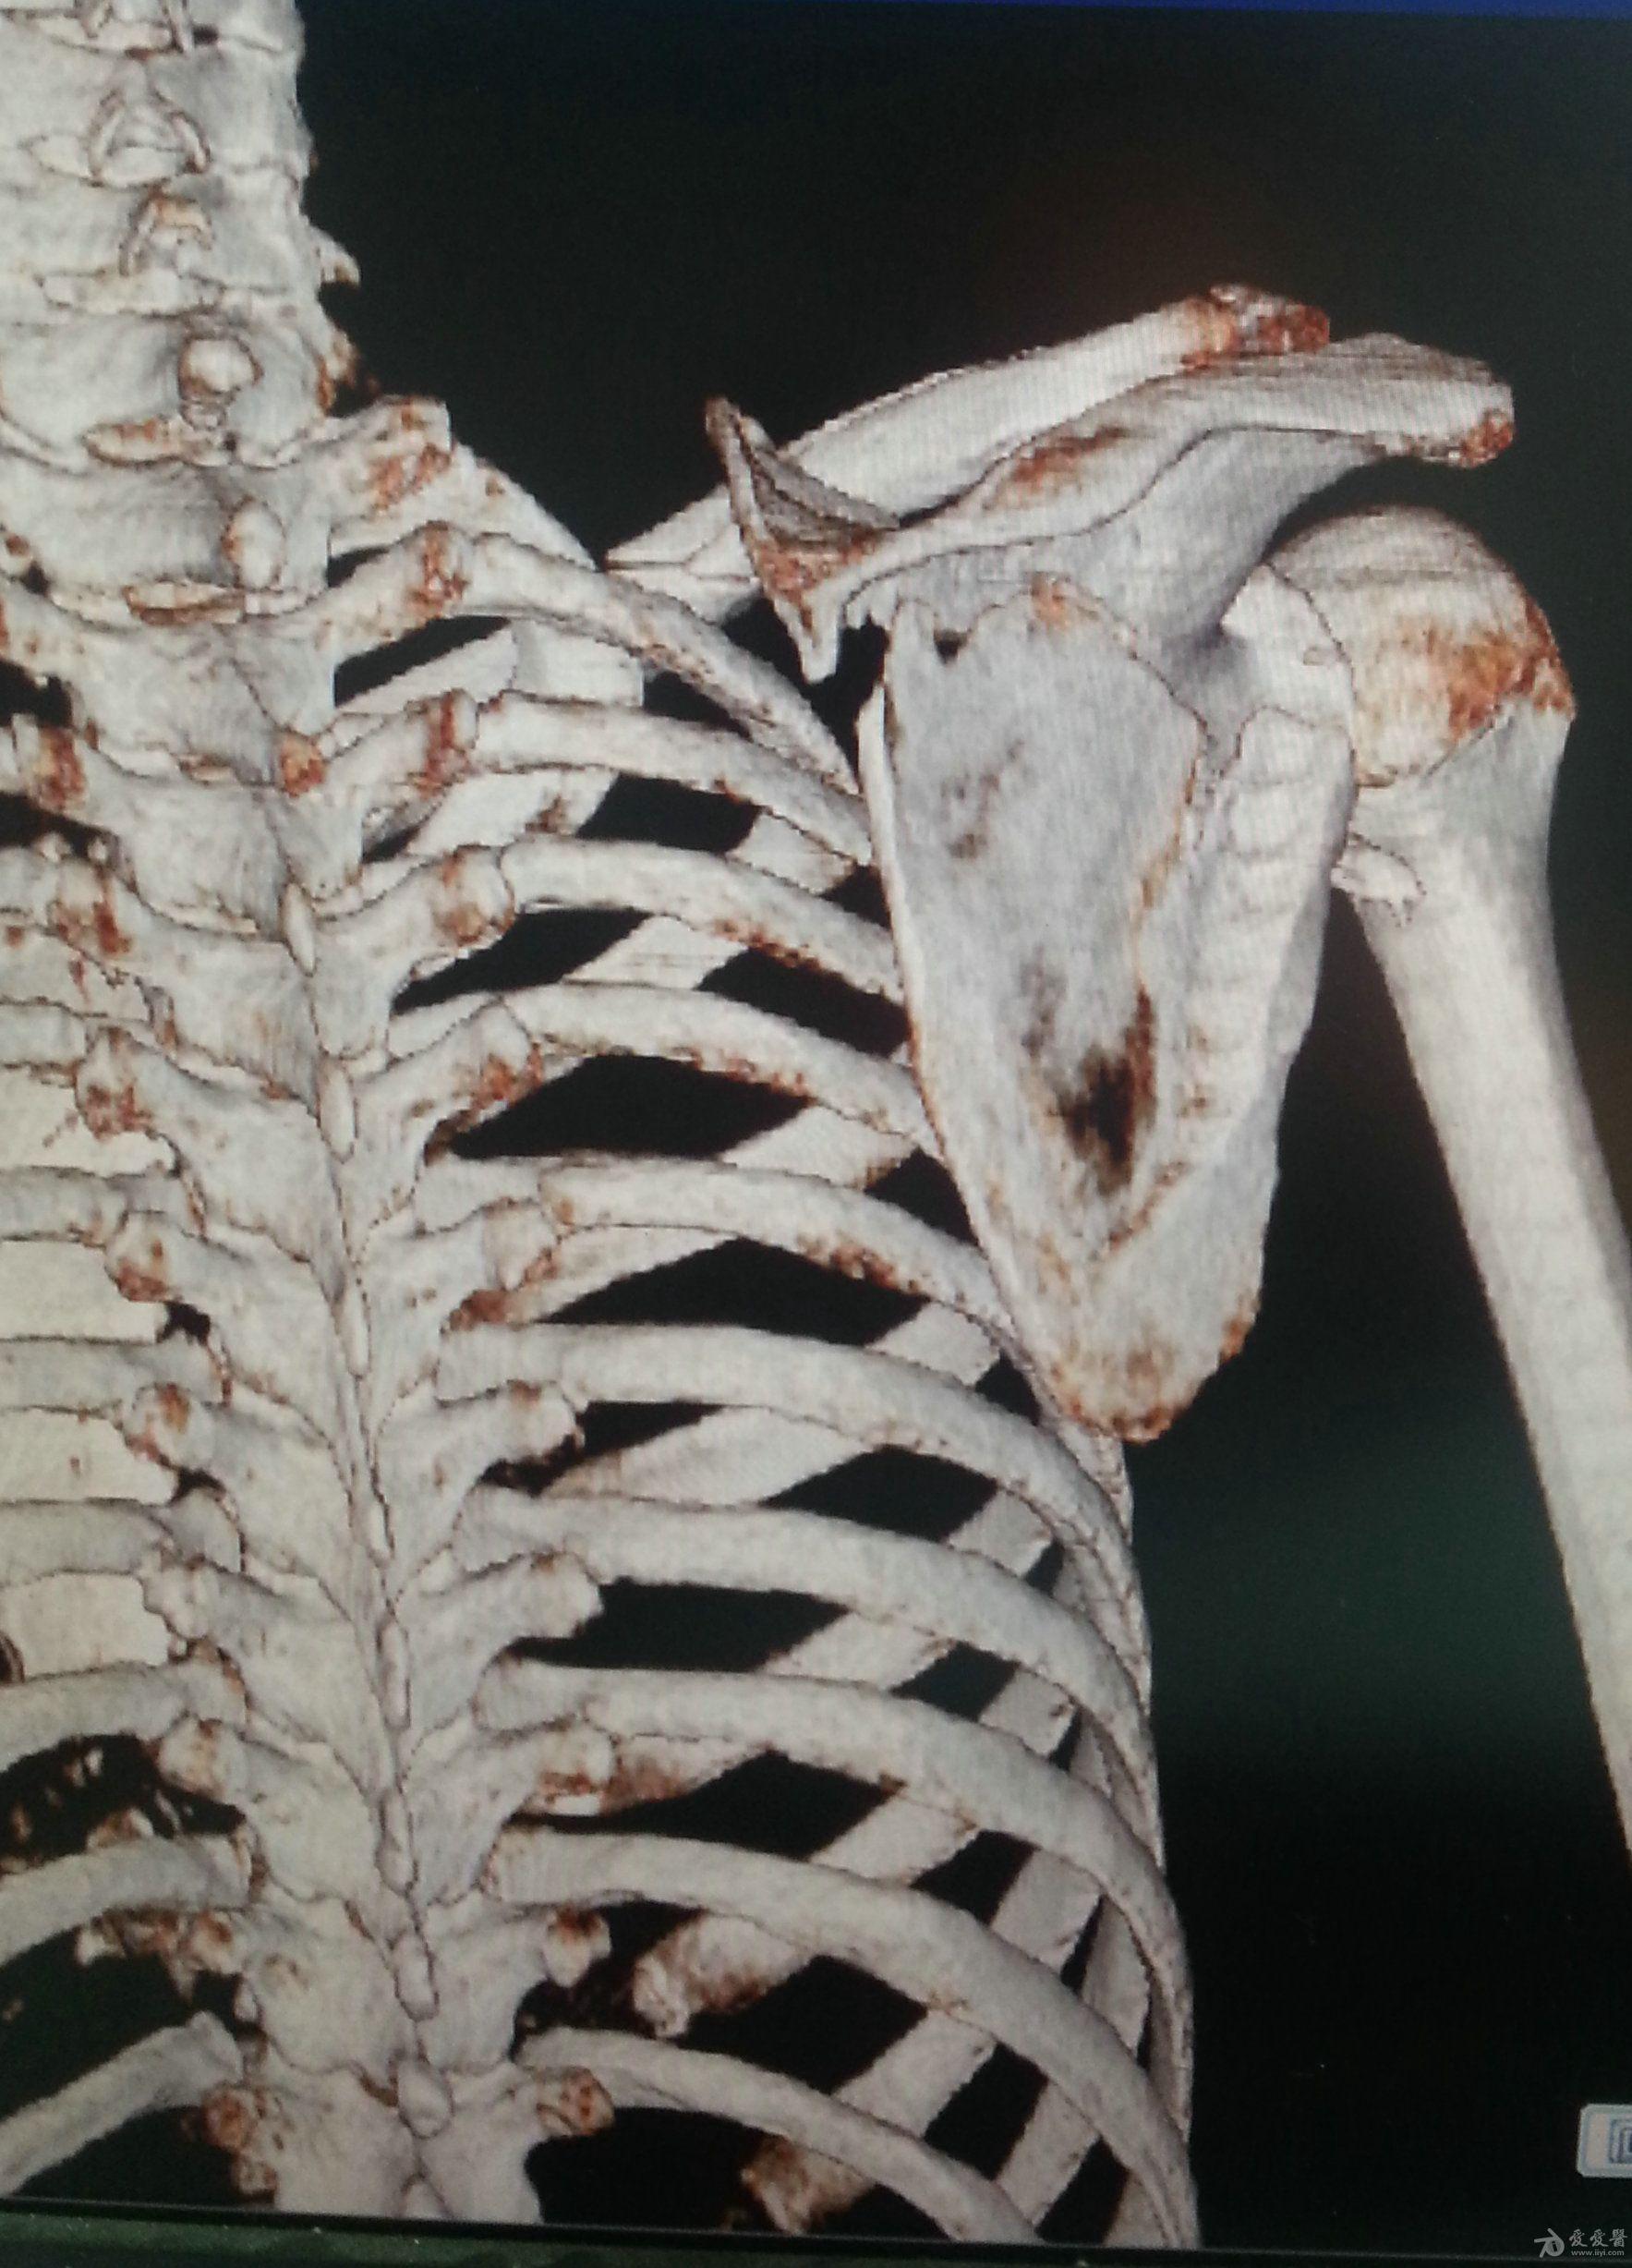 肩胛骨横行骨折,锁骨粉碎骨折,肩峰骨折如何处理